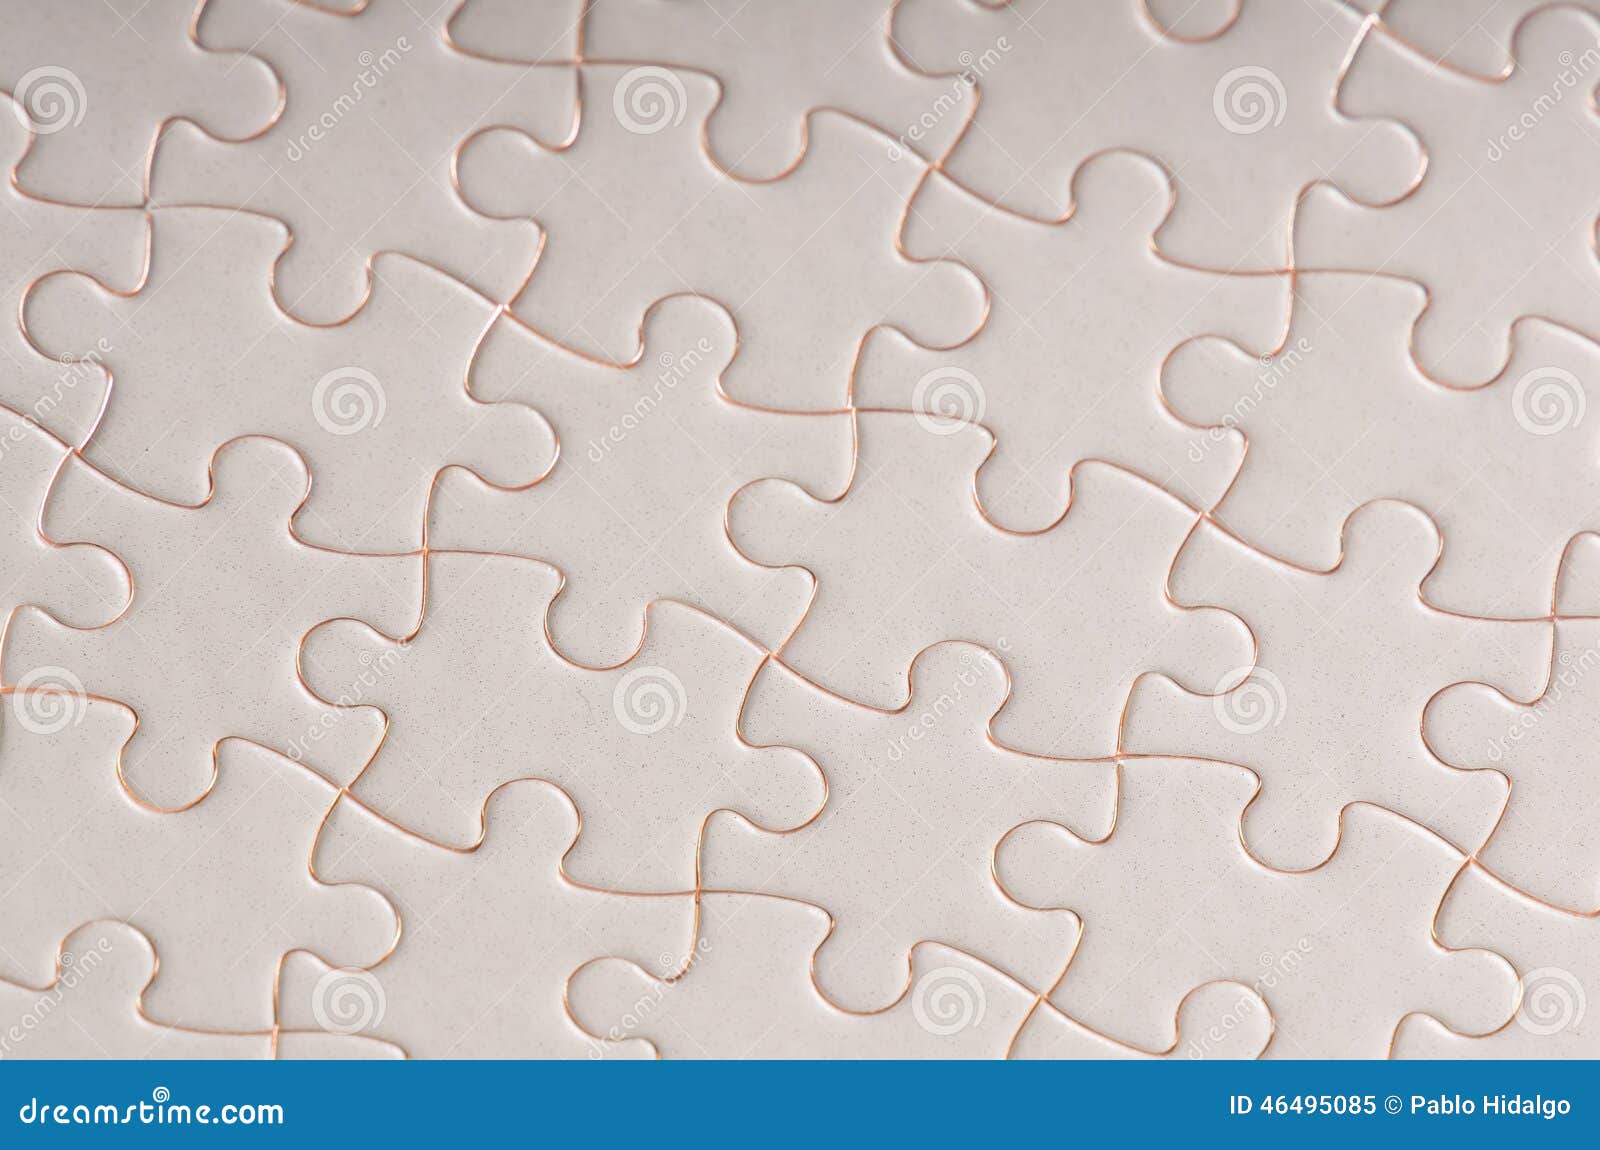 gevaarlijk Behoort Parelachtig Witte volledige puzzel stock afbeelding. Image of keus - 46495085